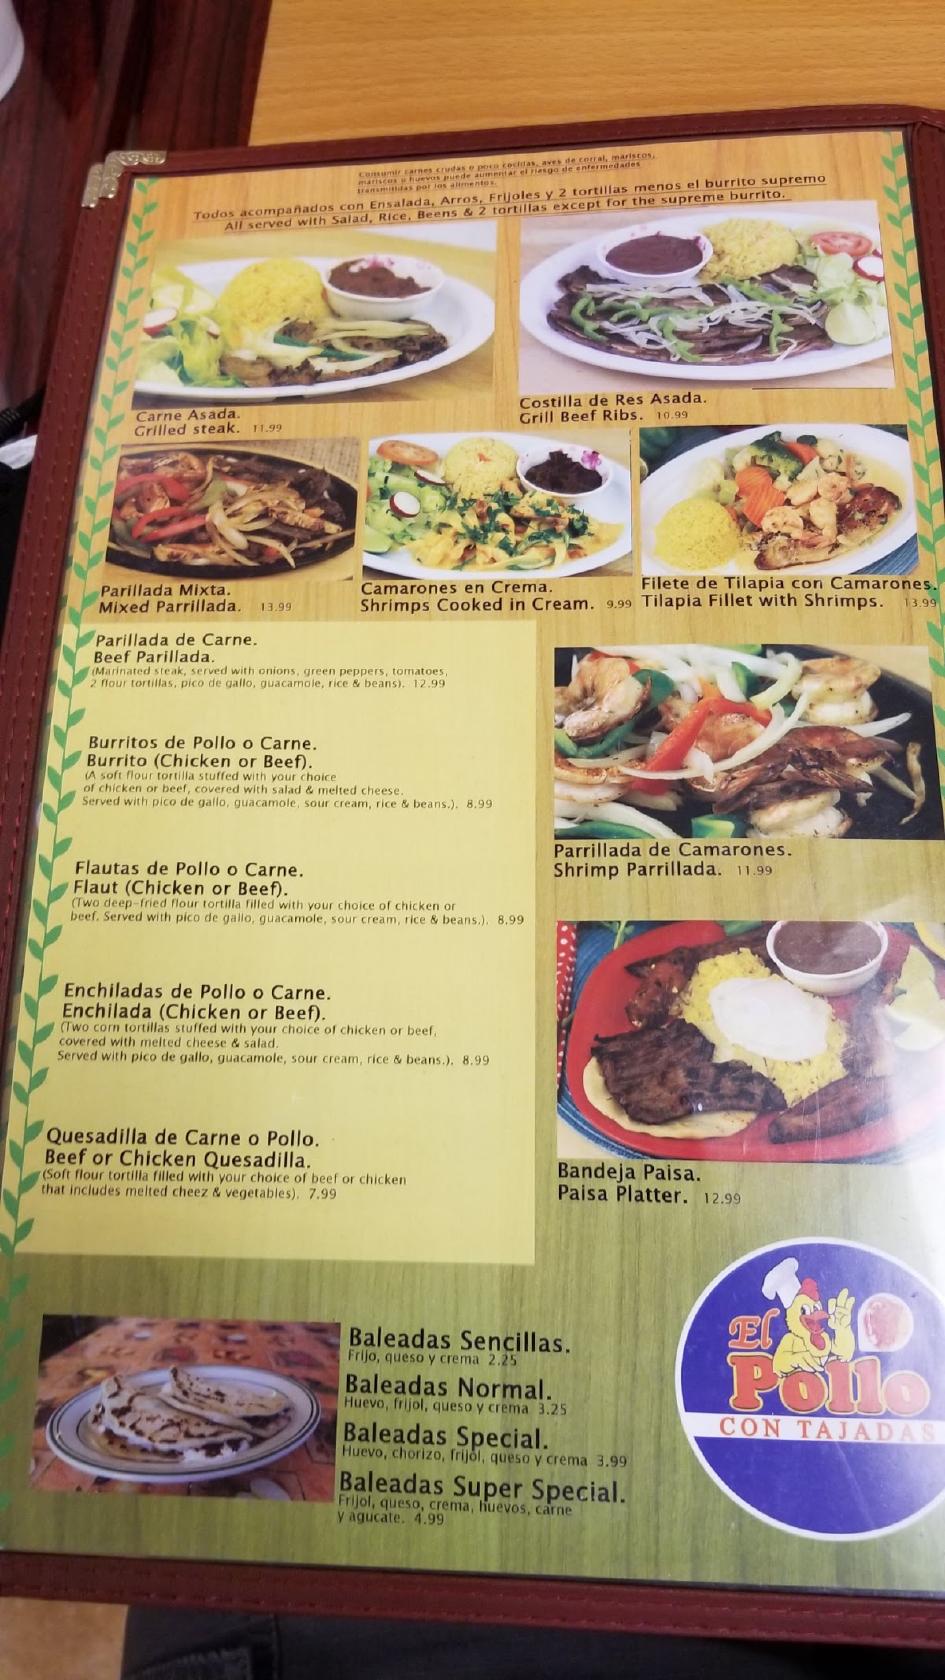 Menu at El Pollo Con Tajadas restaurant, Houston